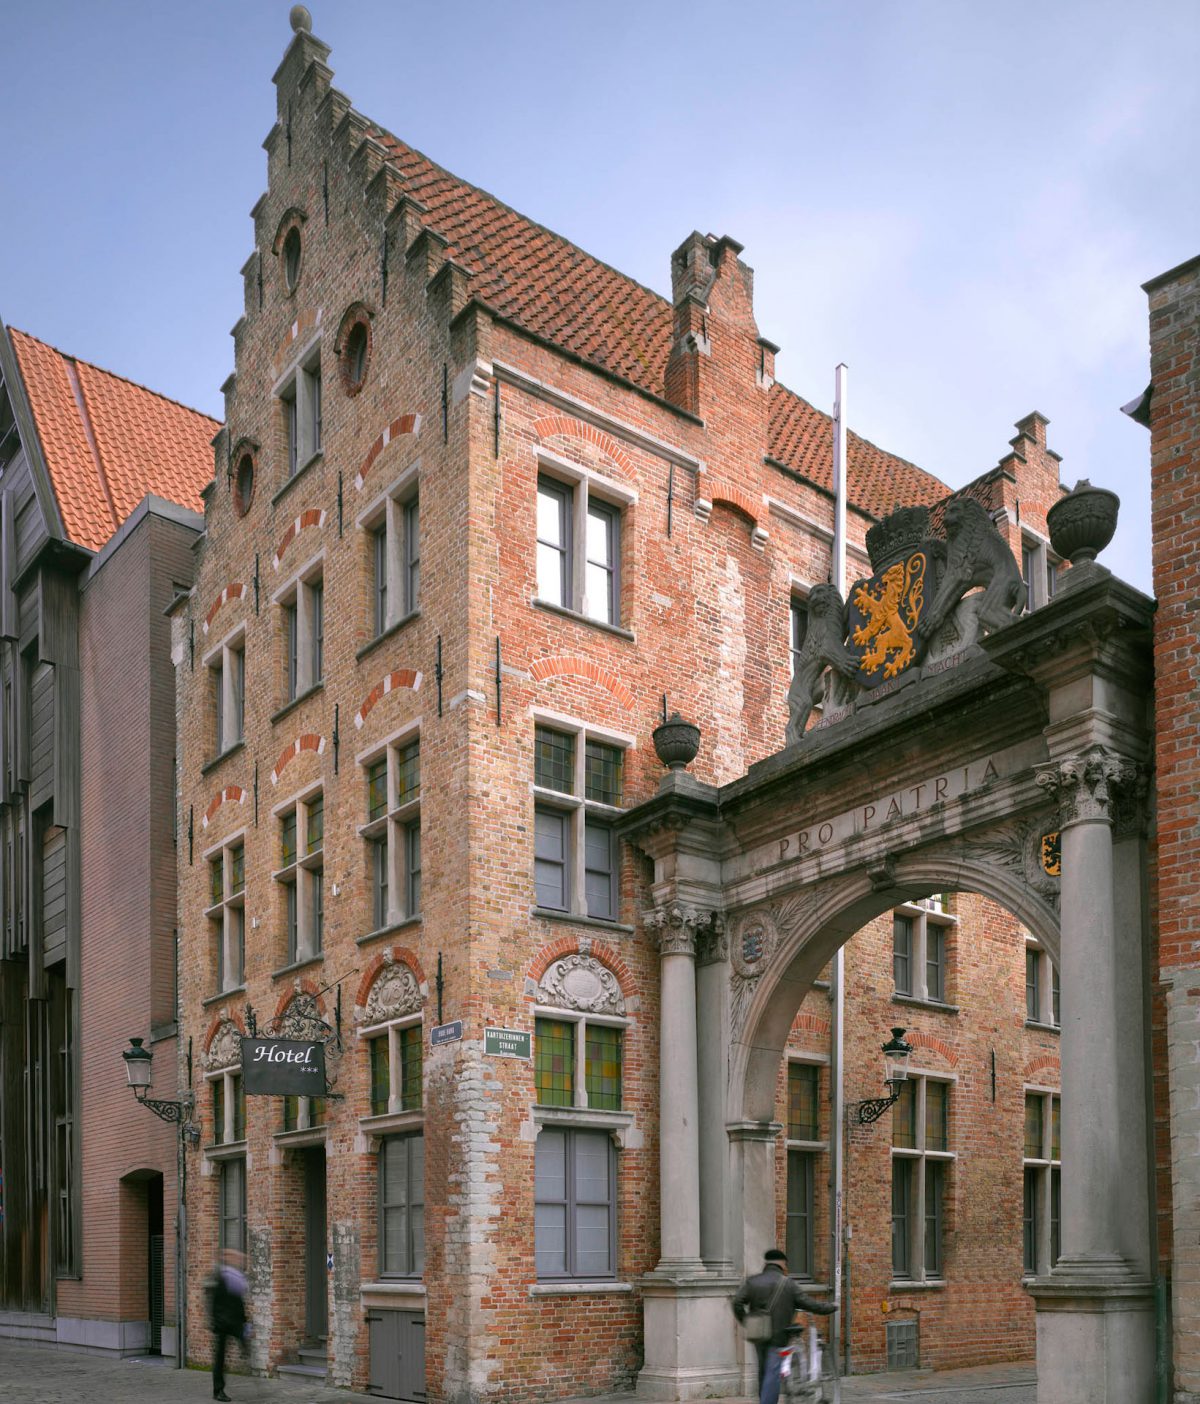 The exterior of Martin's Hotel, Bruges, Belgium